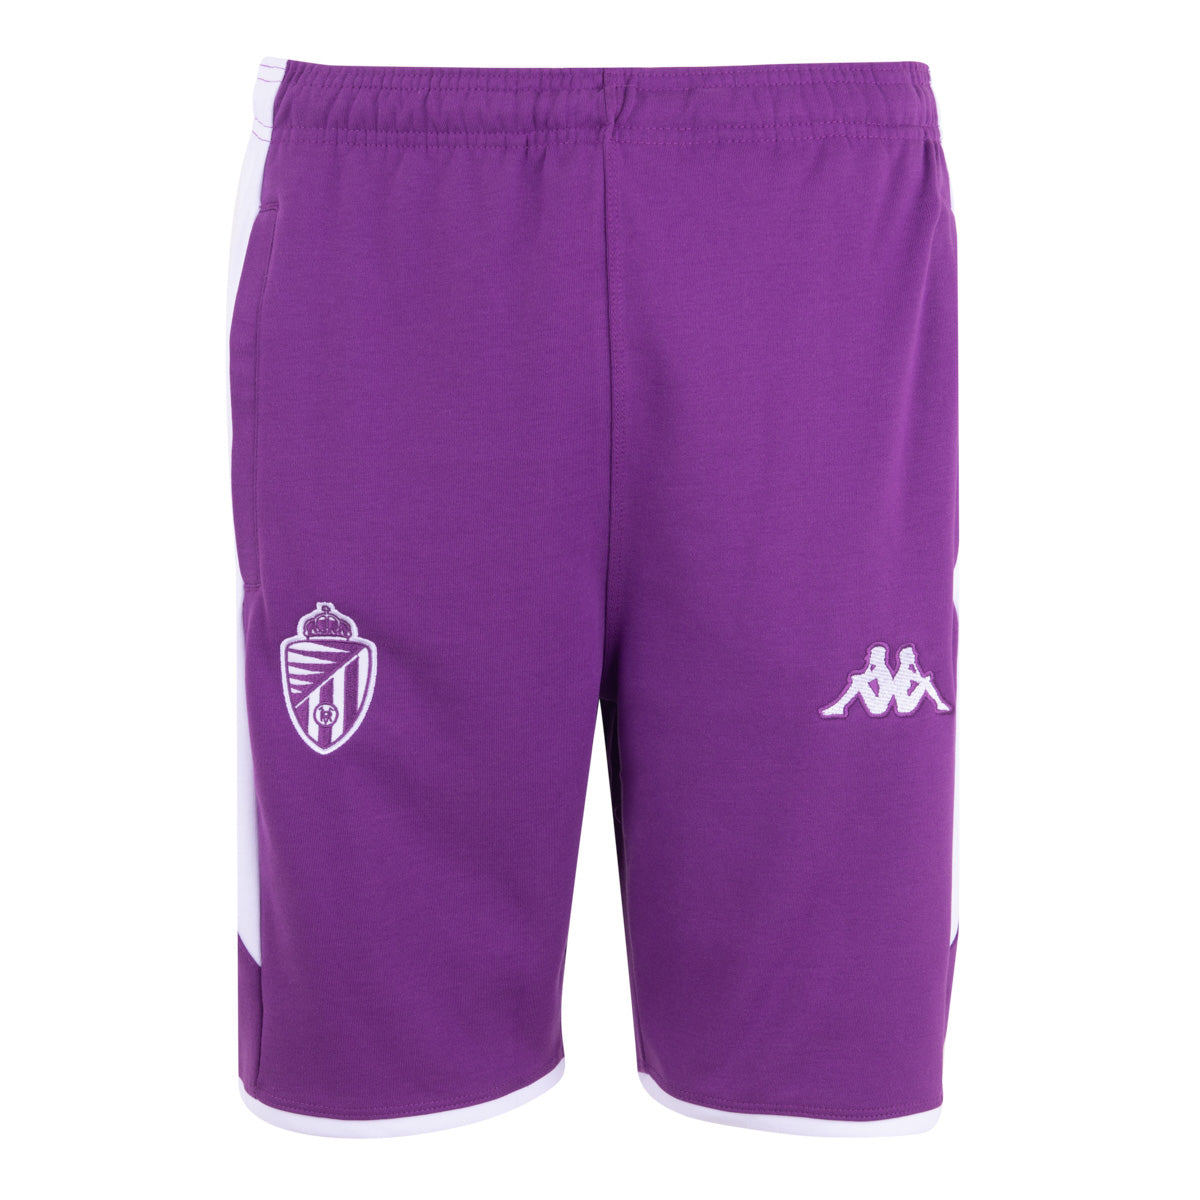 Pantalones cortos Alozip 7 Real Valladolid Violeta Niños